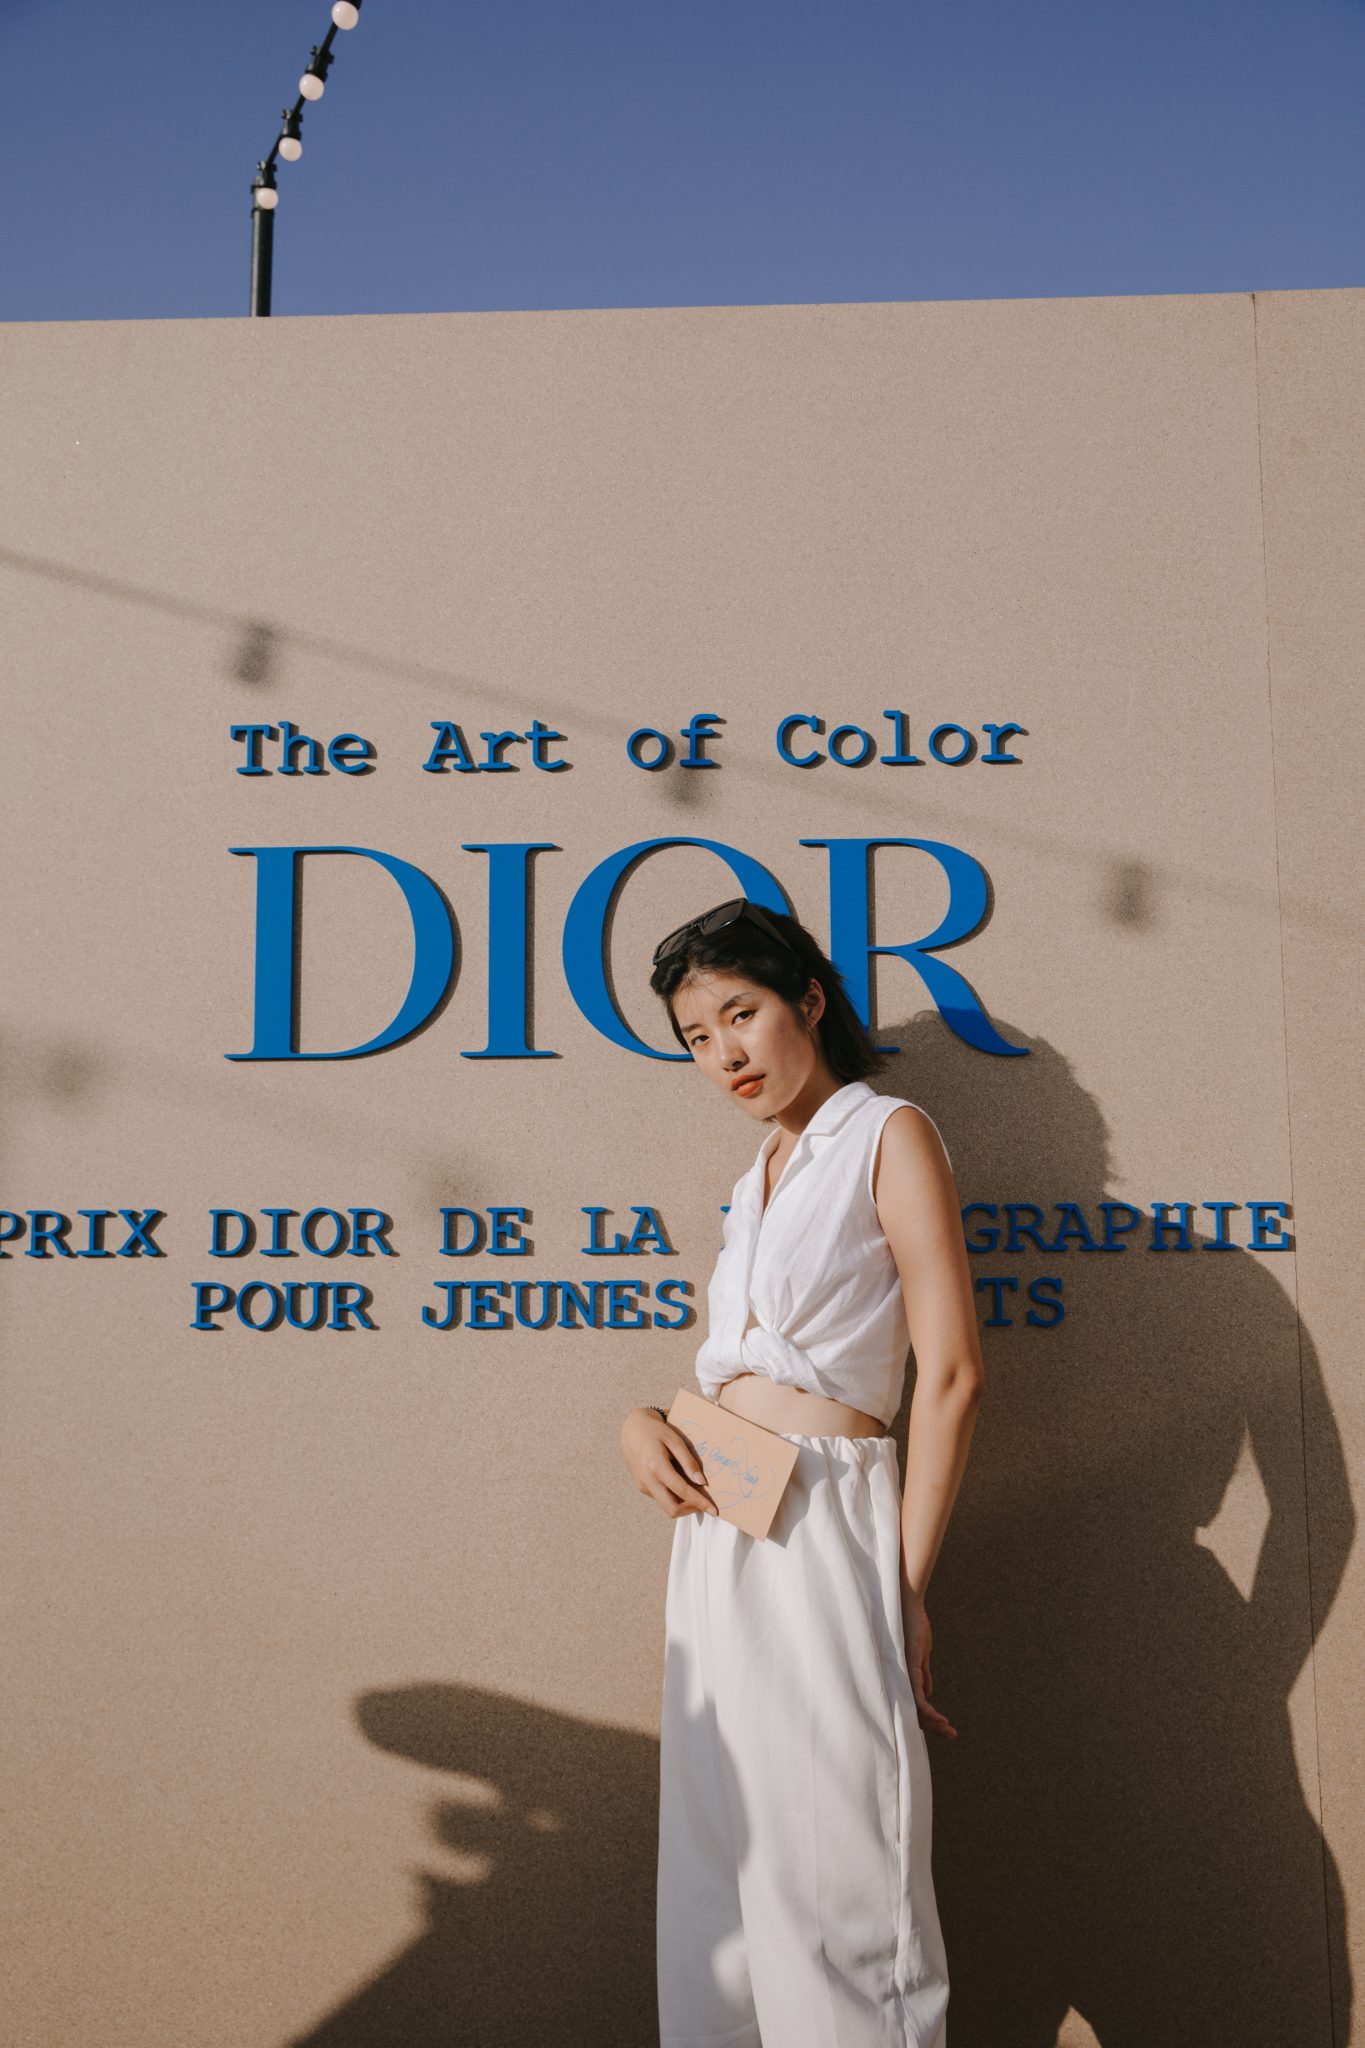 Dior Photography Award